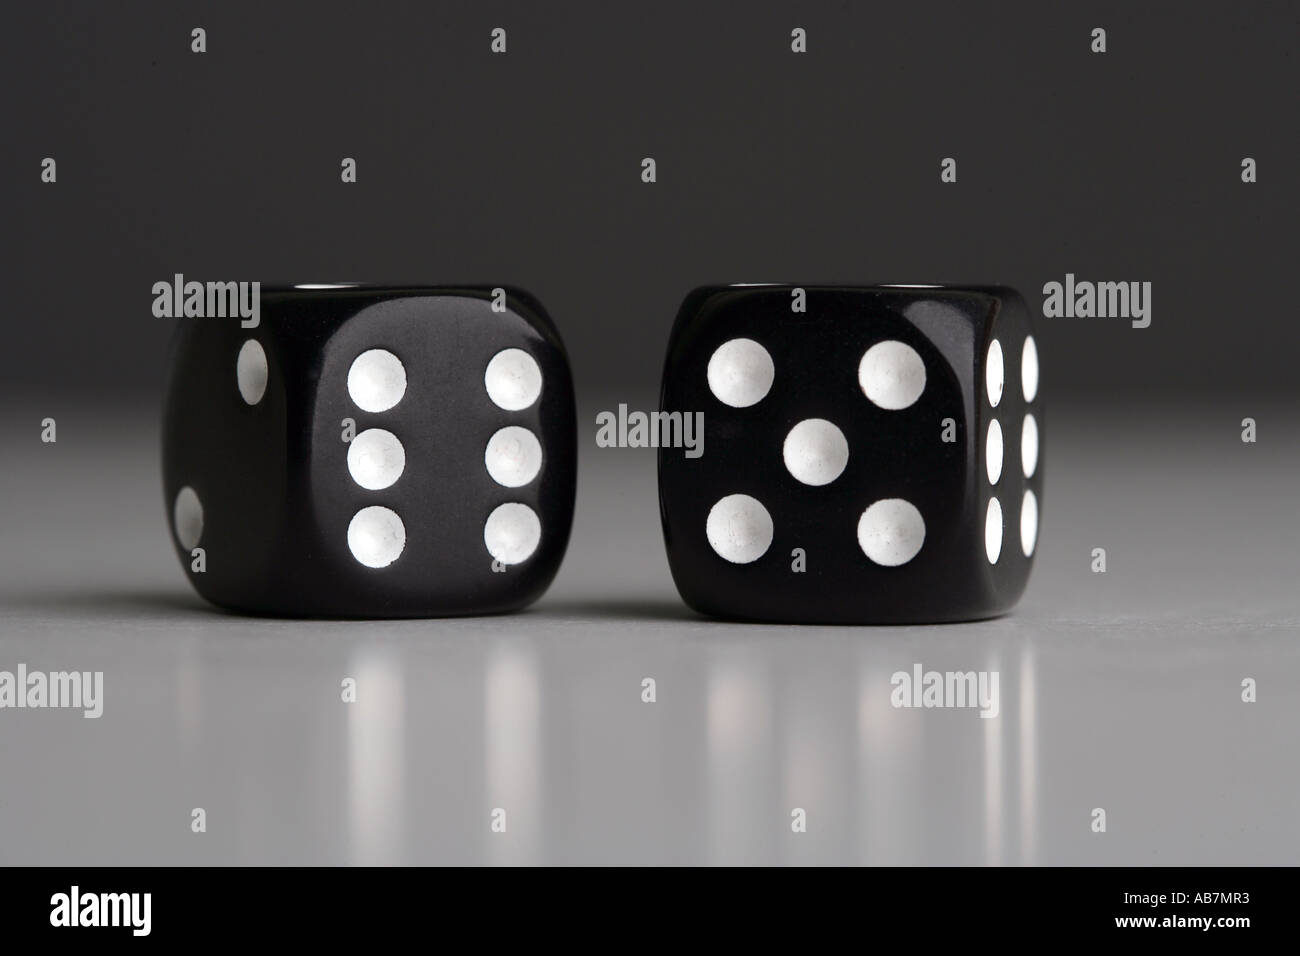 Deux black dice avec onze montrant sur fond gris. Les jeux de hasard, la chance, la chance des concepts. Banque D'Images